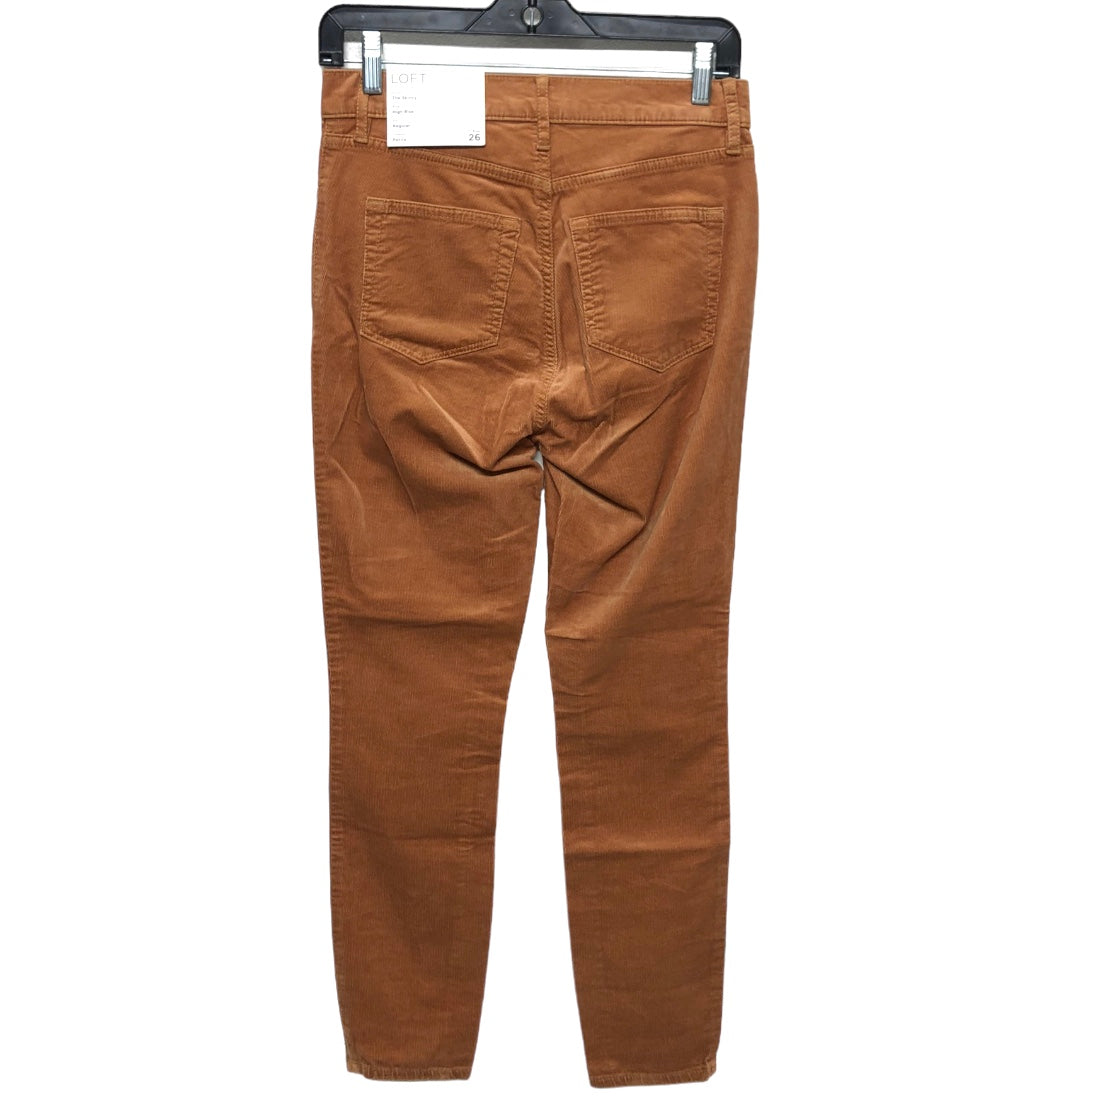 Pants Corduroy By Loft  Size: 2